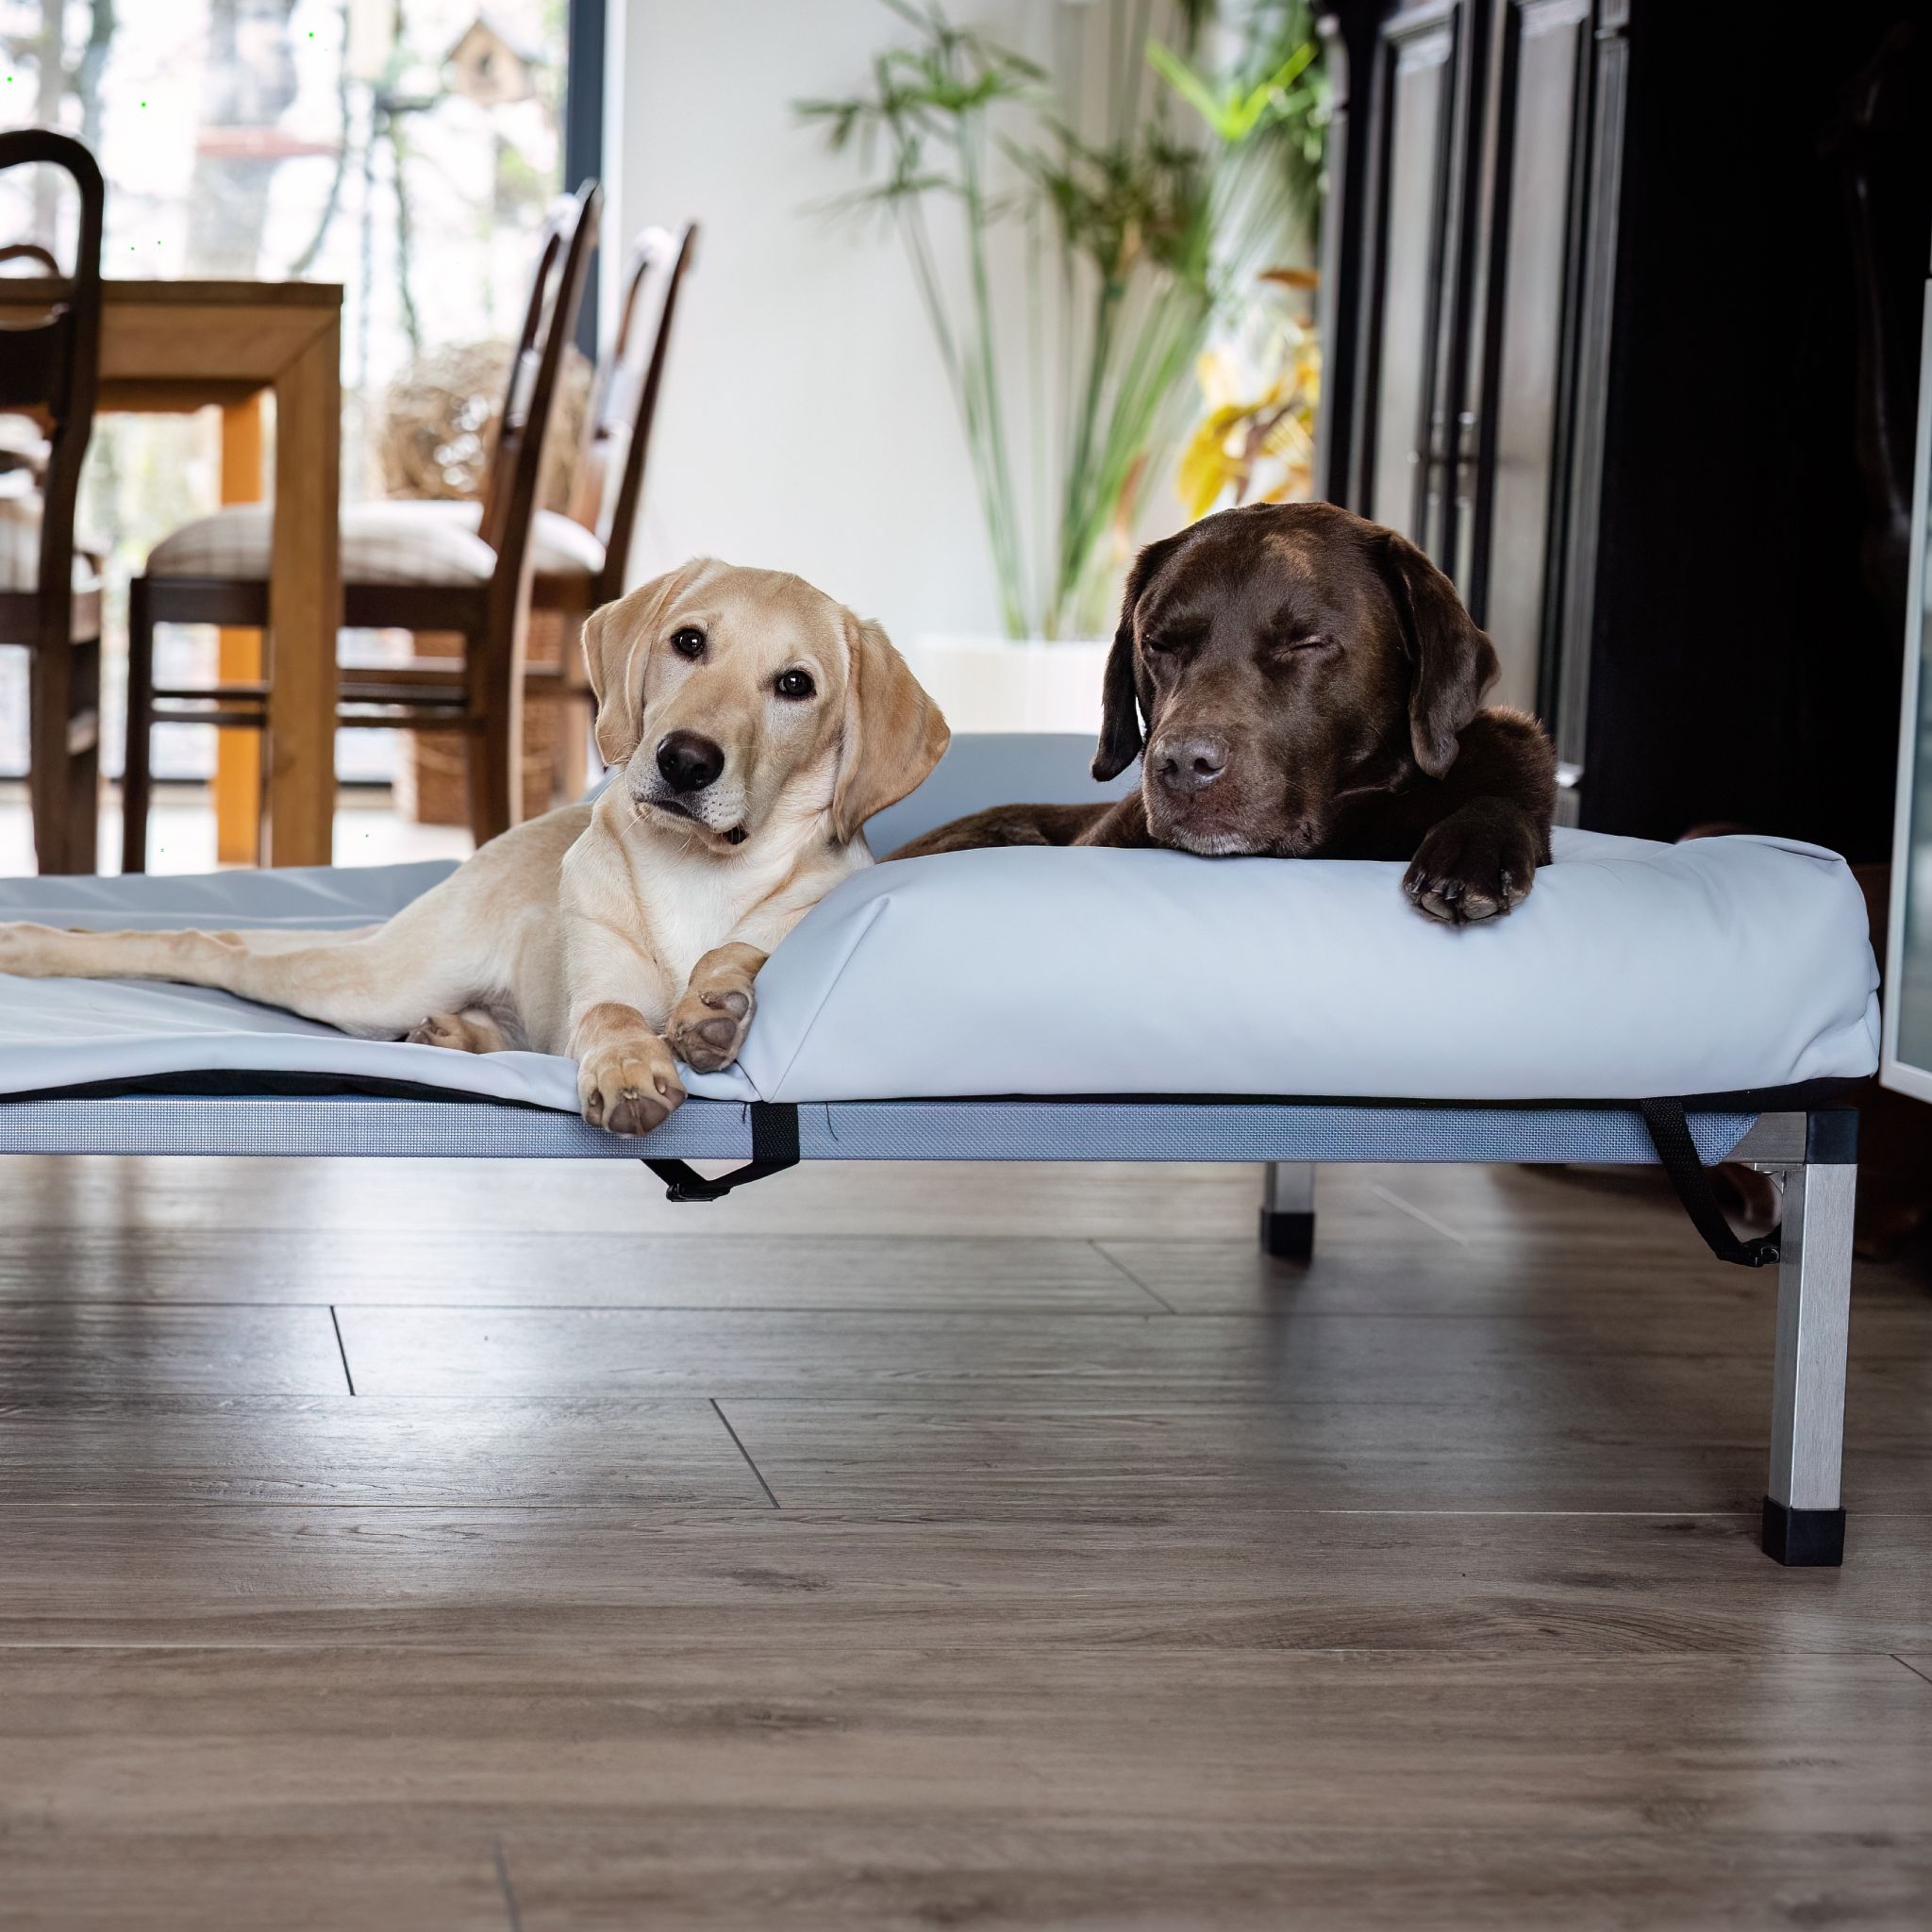 Hundeliege ANADI Klassik Größe M, L, XL. Das Luxus-Hundebett mit Edelstahlgestell für Hunderassen bis 60 kg